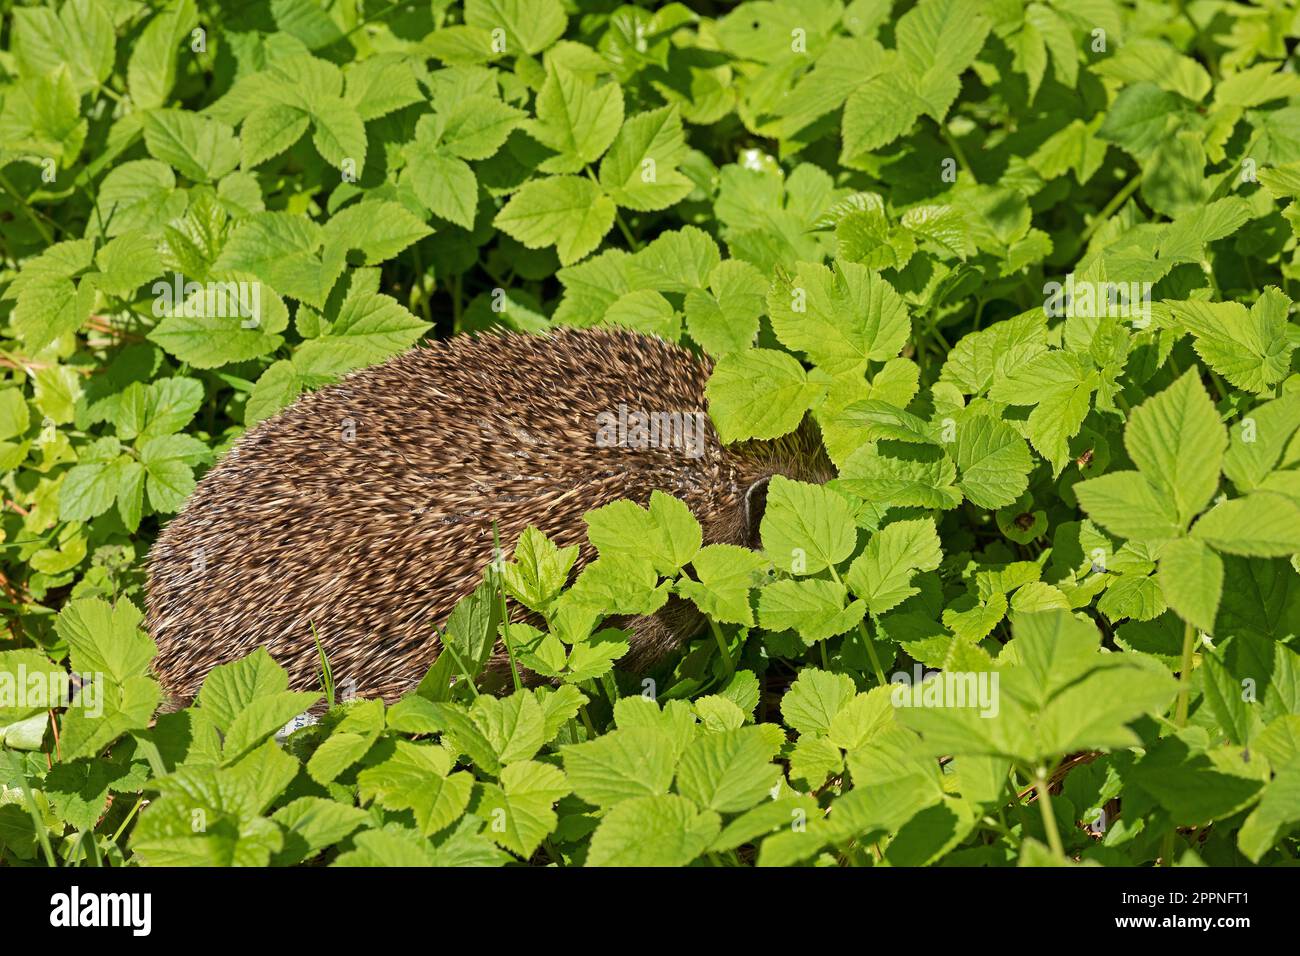 Hedgehog (Erinaceidae) hiding between leaves, Krummsee, Malente, Schleswig-Holstein, Germany Stock Photo